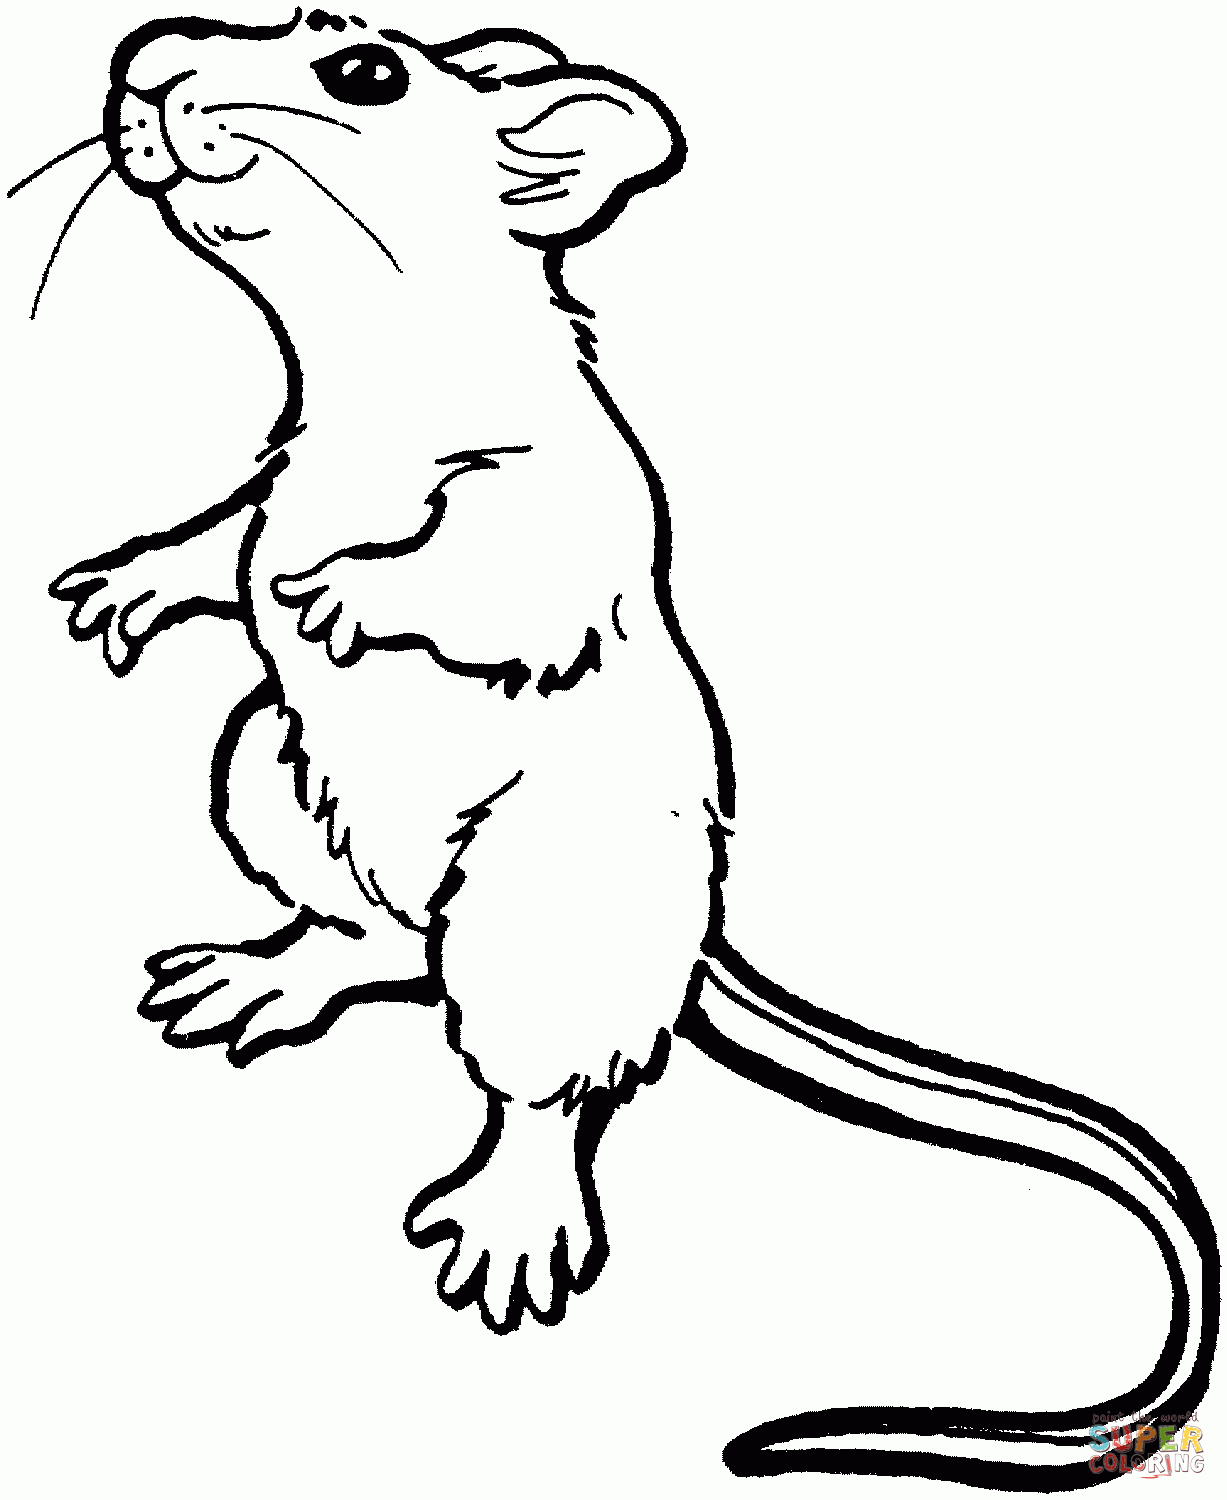 Ausmalbilder Mäuse - Malvorlagen Kostenlos Zum Ausdrucken bestimmt für Ausmalbilder Die Maus